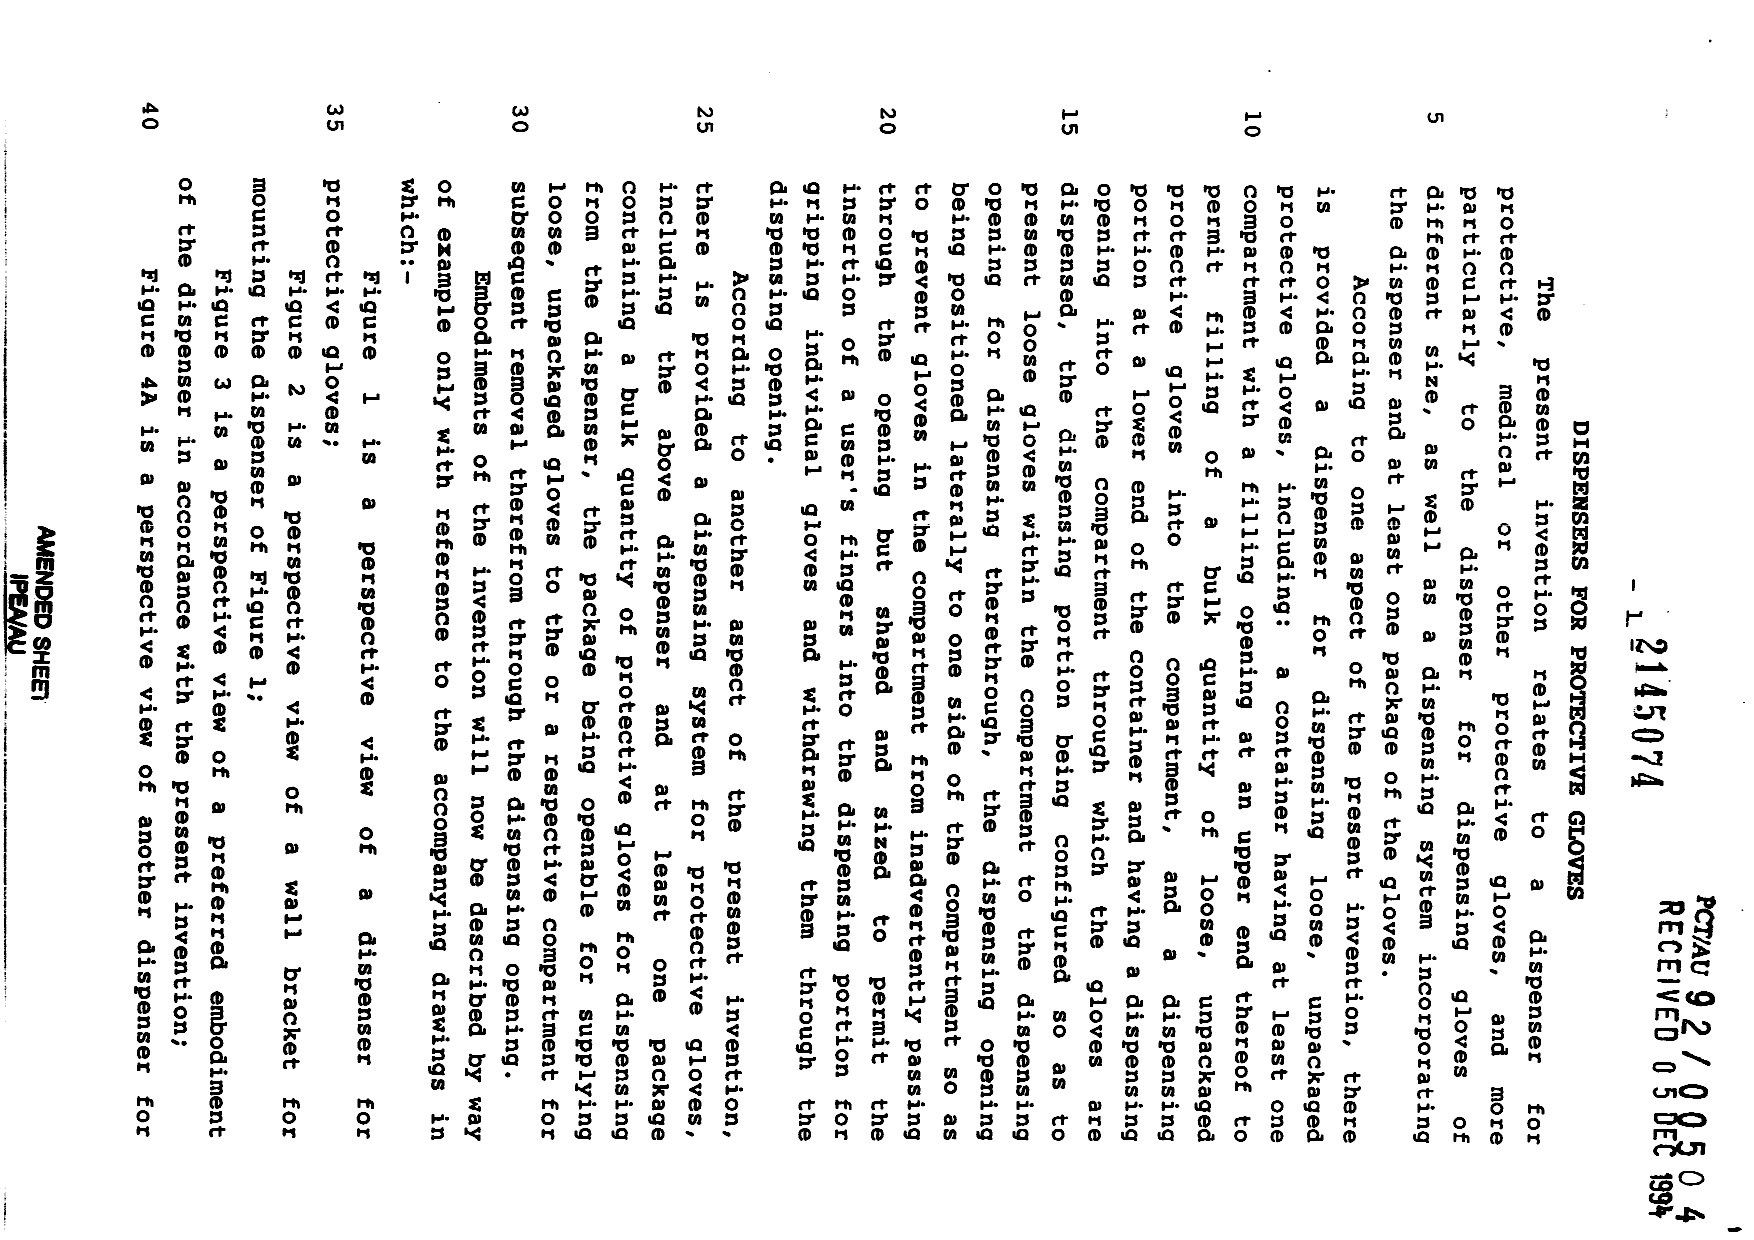 Canadian Patent Document 2145074. Description 19991118. Image 1 of 4